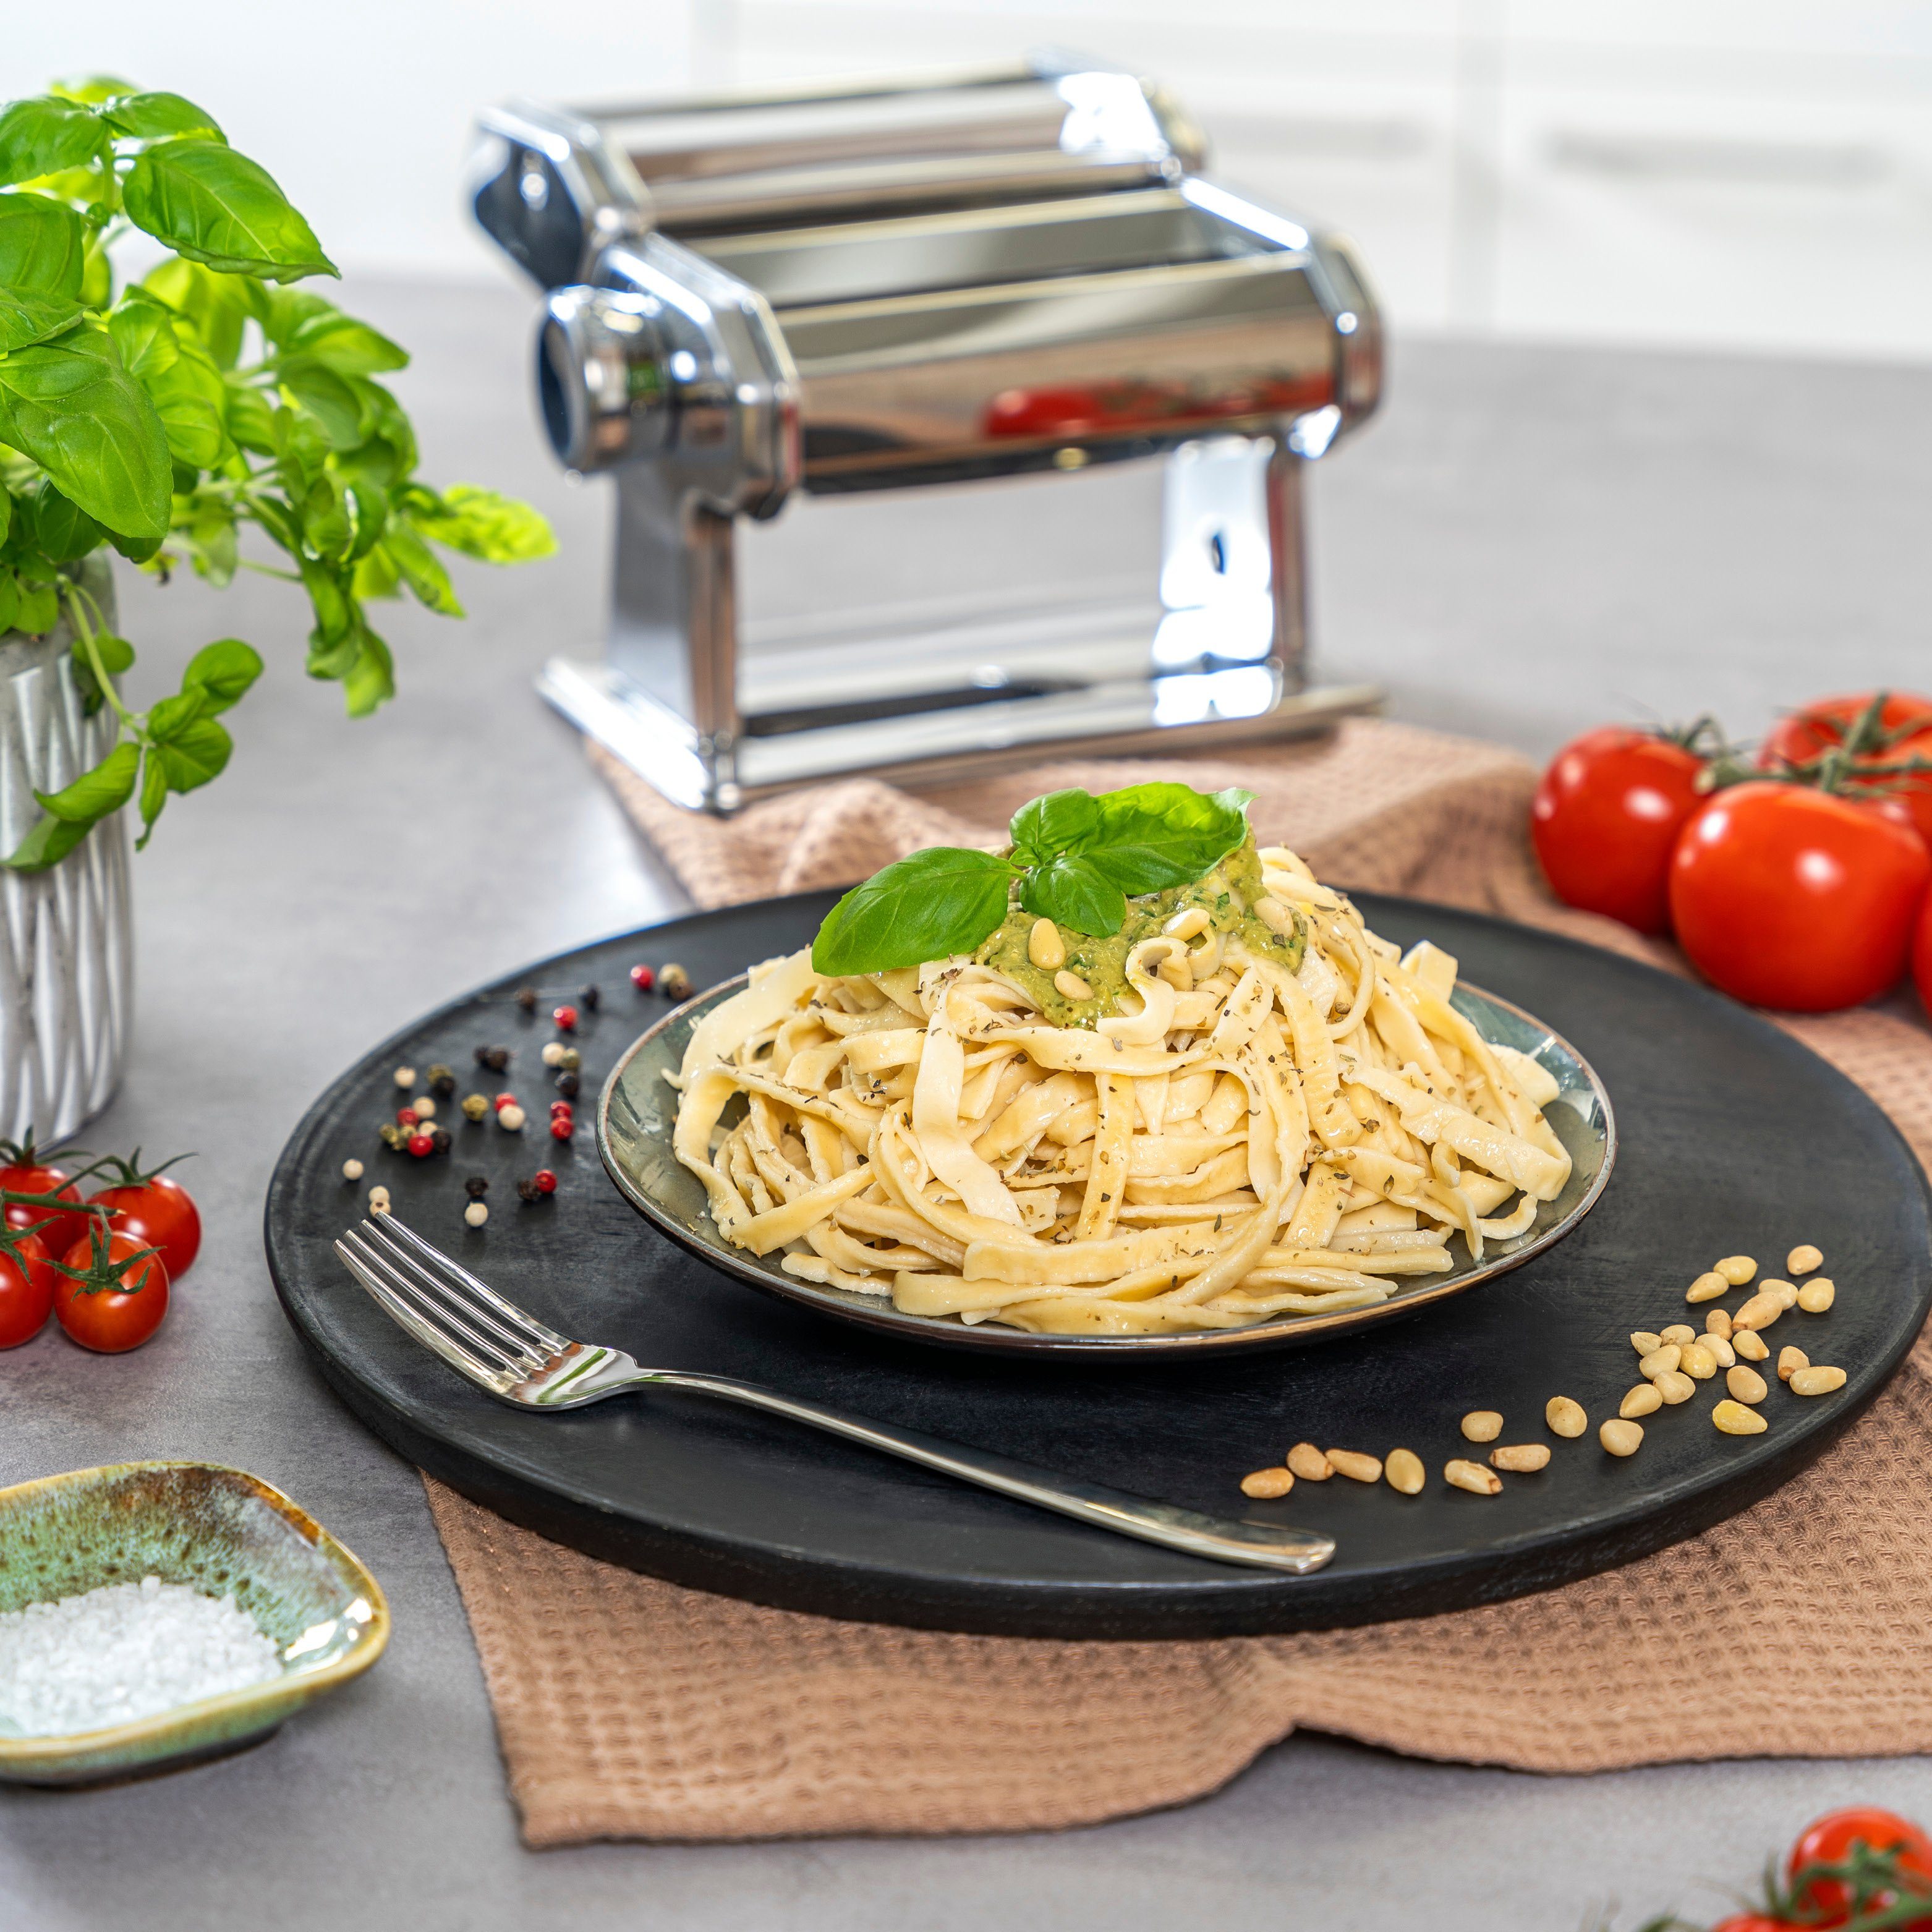 - bremermann Edelstahl Nudelmaschine bremermann Nudelmaschine für Pasta Spaghetti, hochglanz